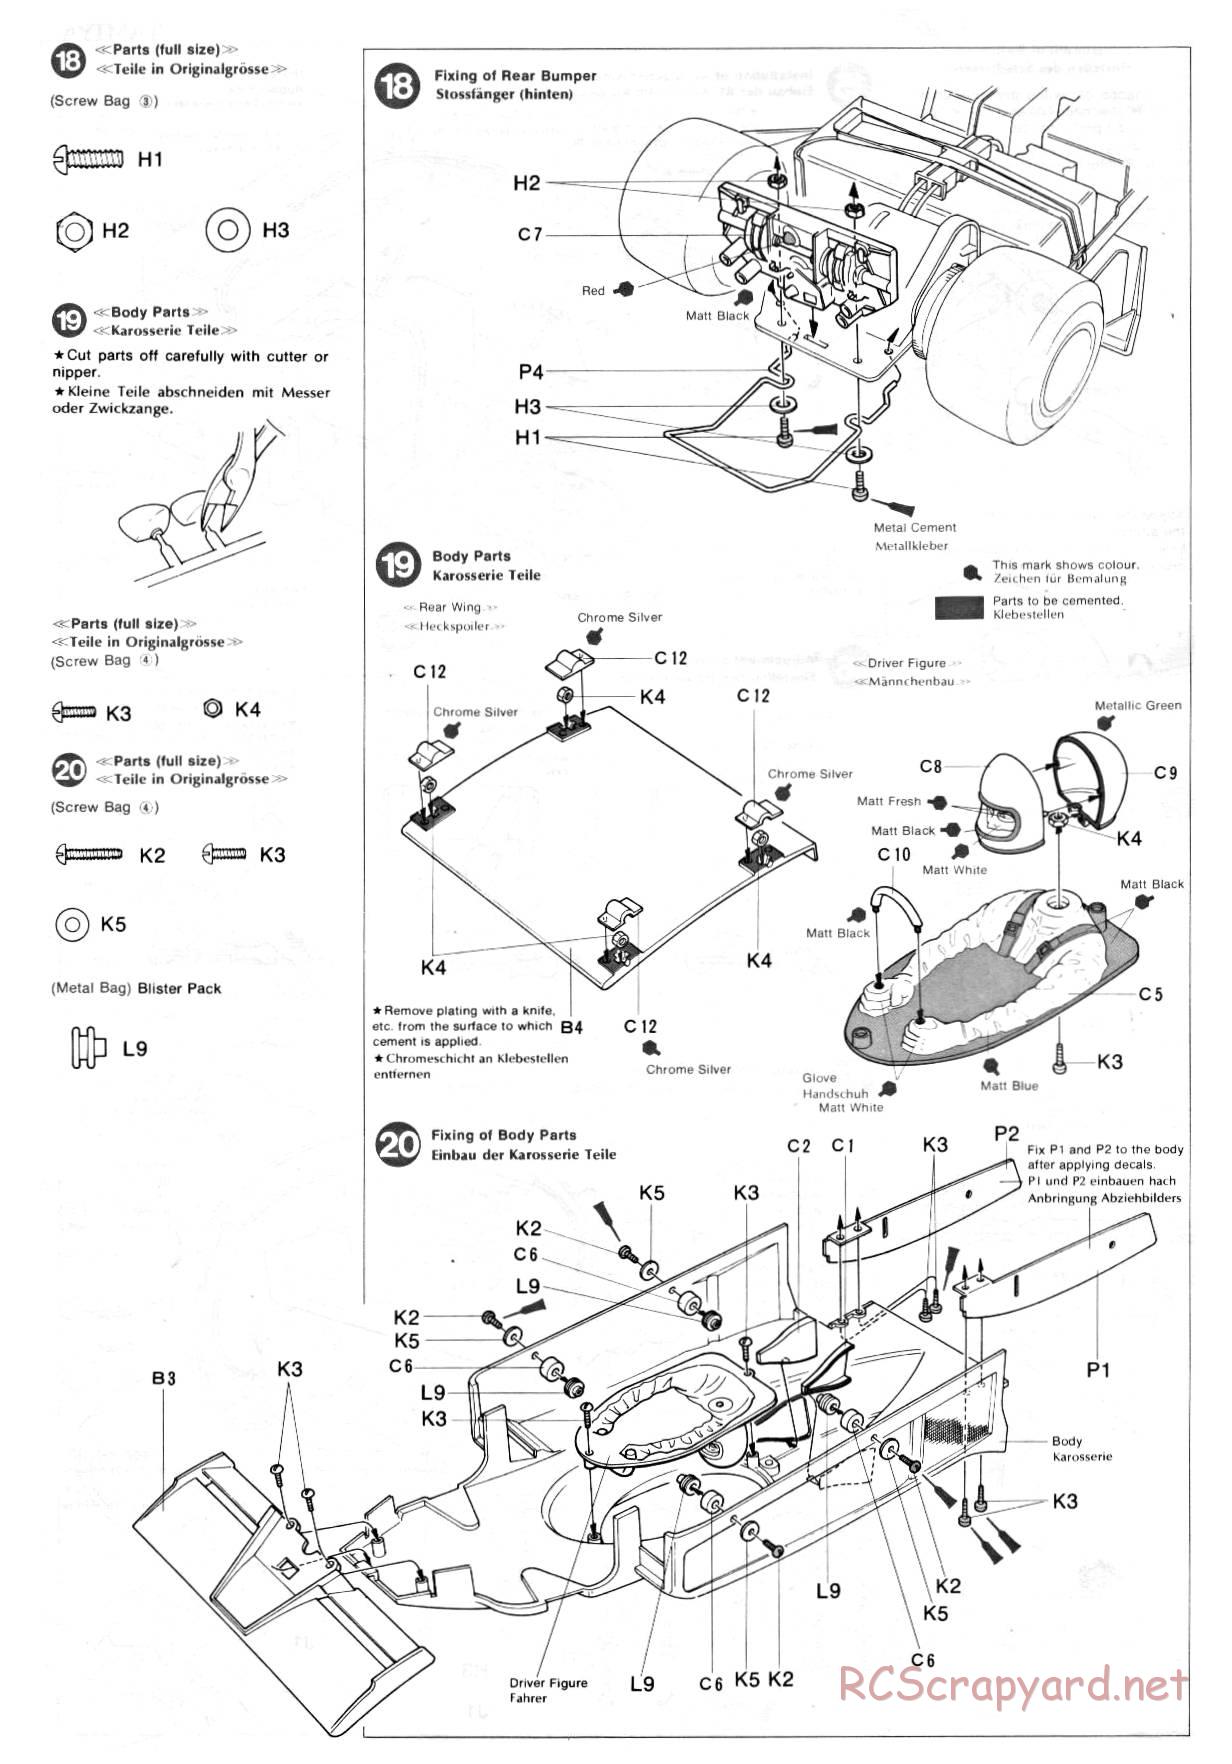 Tamiya - Ligier JS9 Matra - 58010 - Manual - Page 10